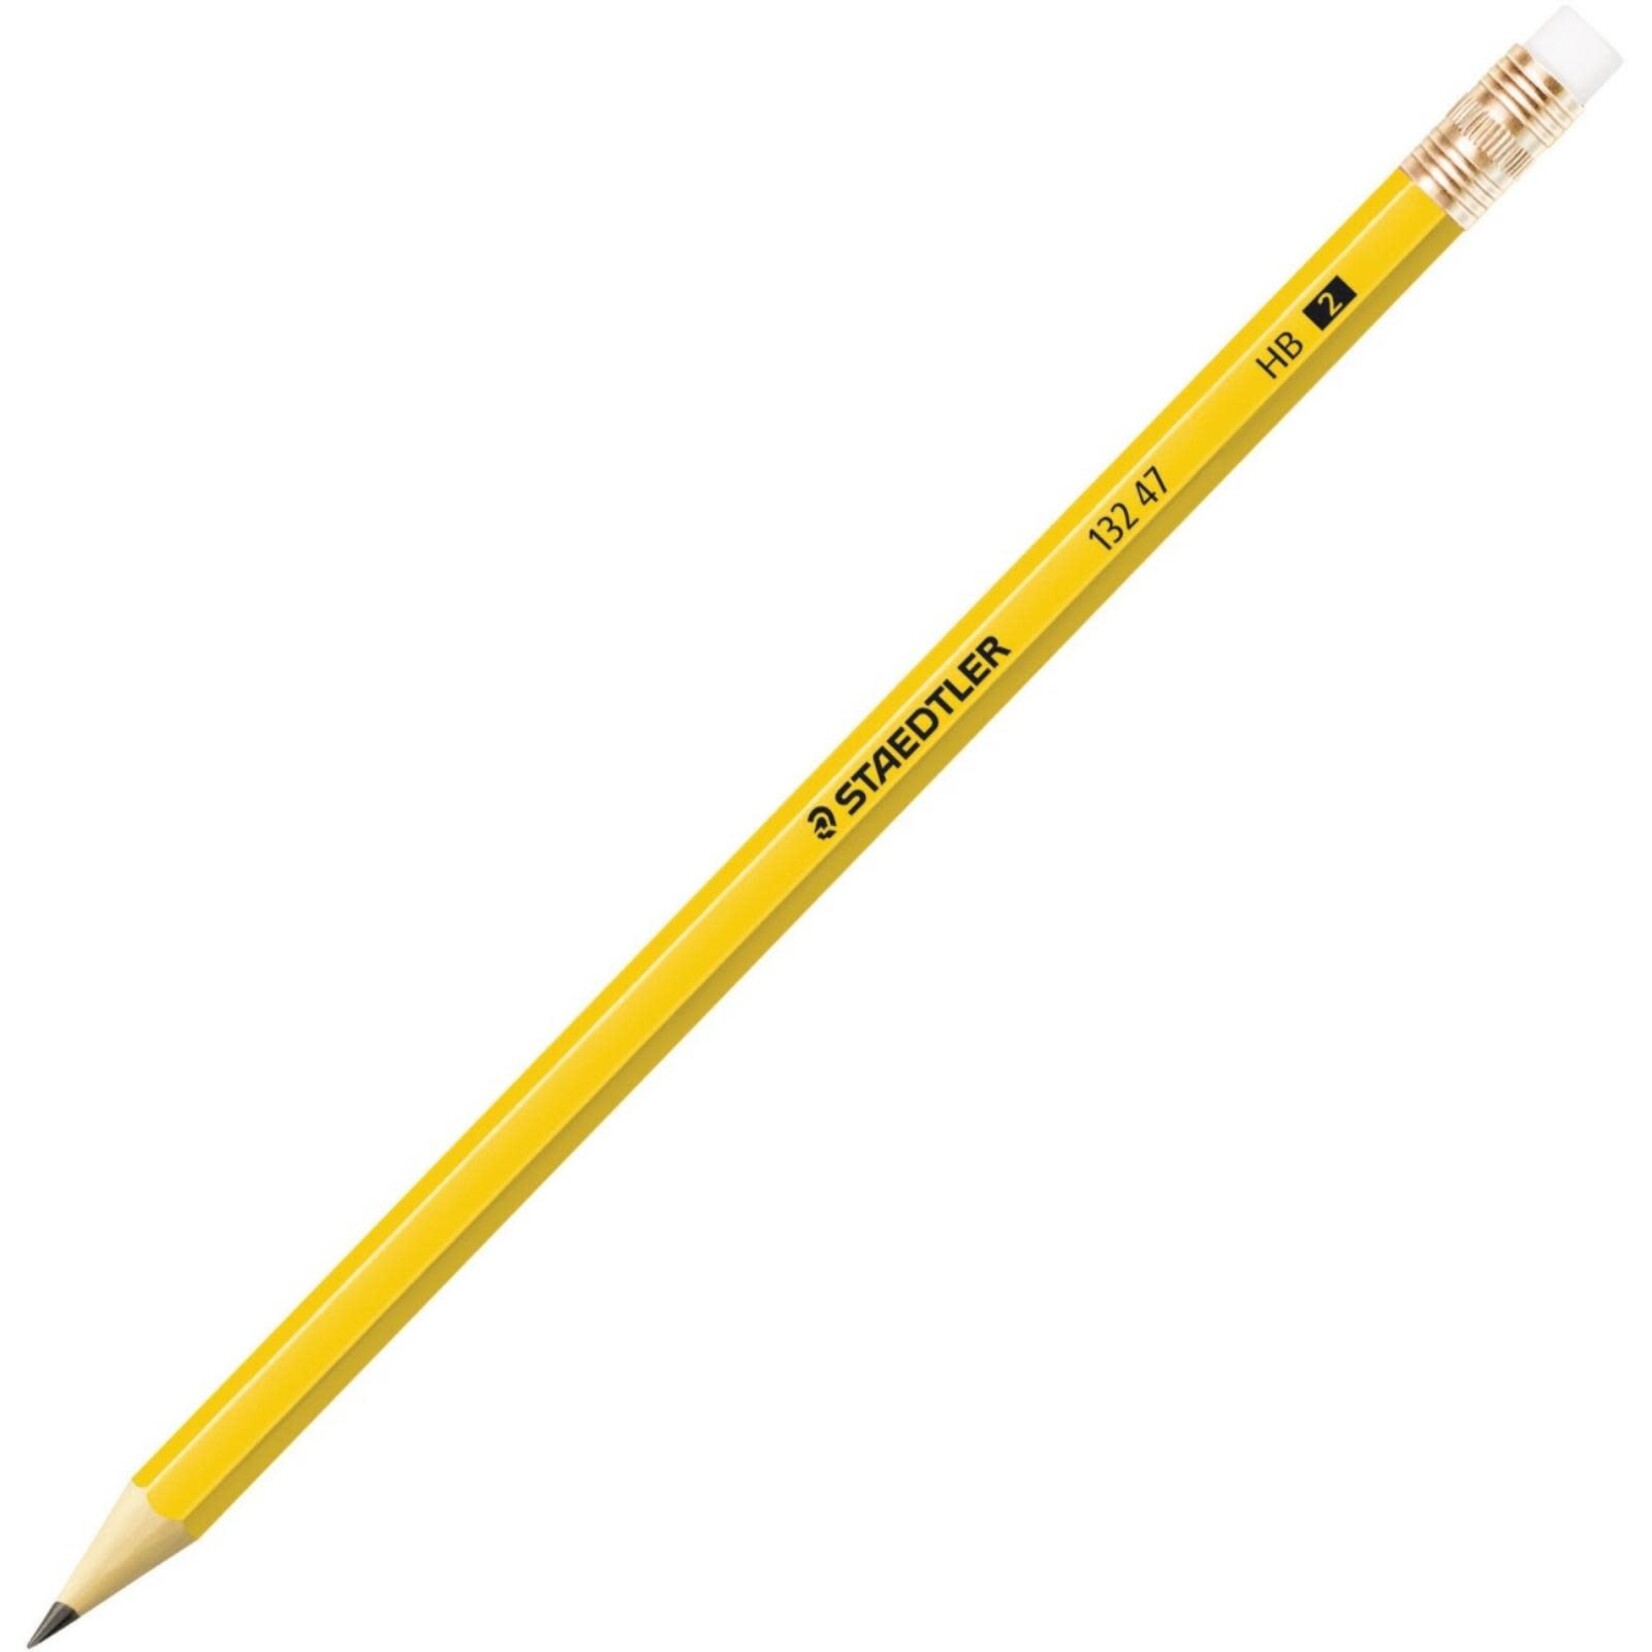 Staedtler Staedtler Woodcase Pencil - Yellow #2